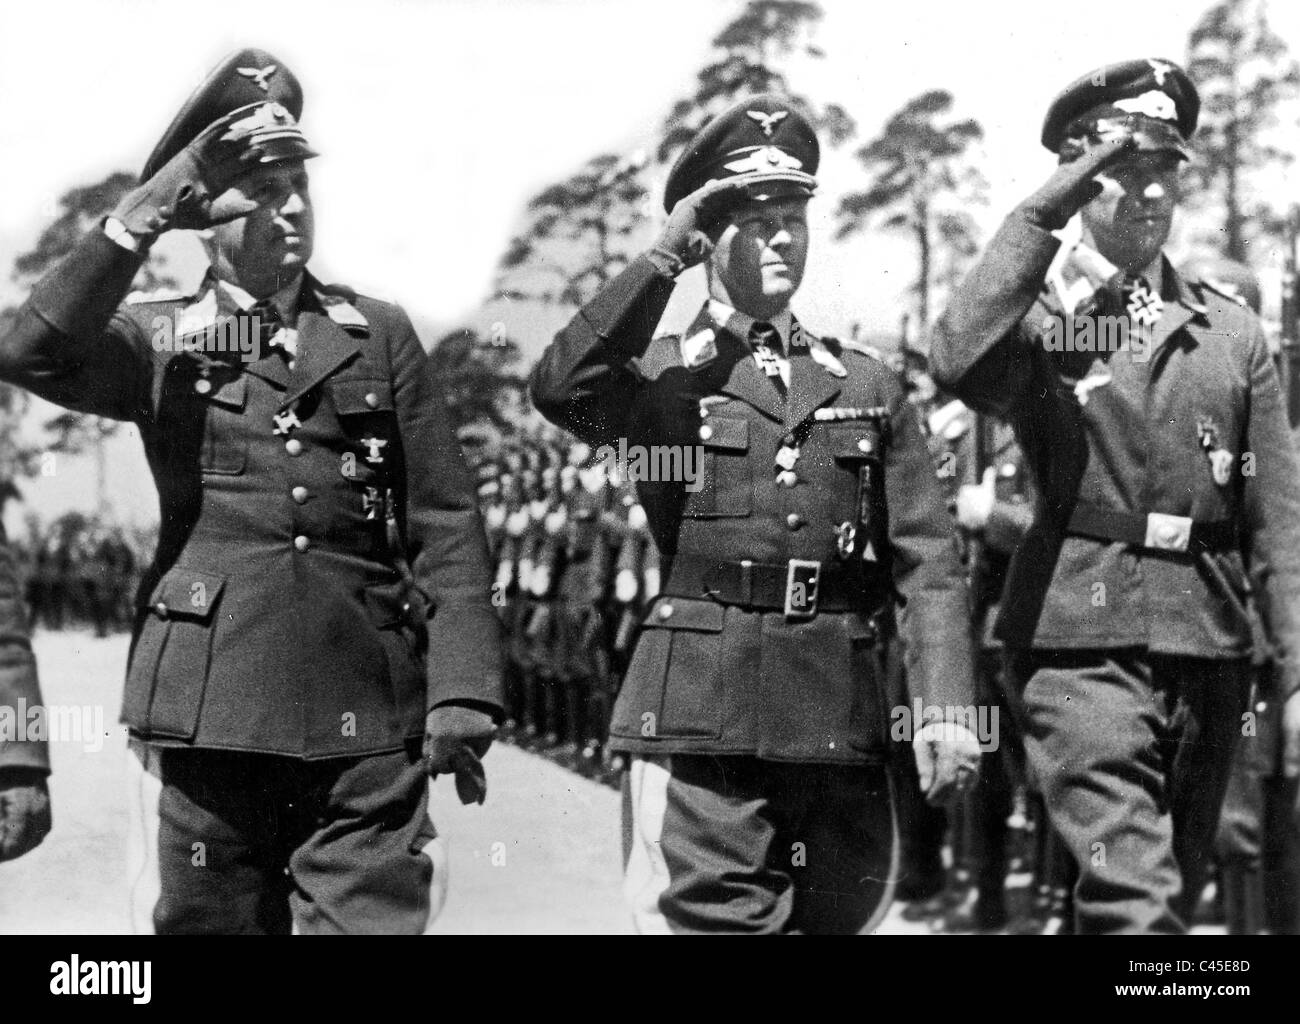 Leutnant General Stumpff, Generaloberst Weise und Platoon Leader Gildner, 1942 Stockfoto